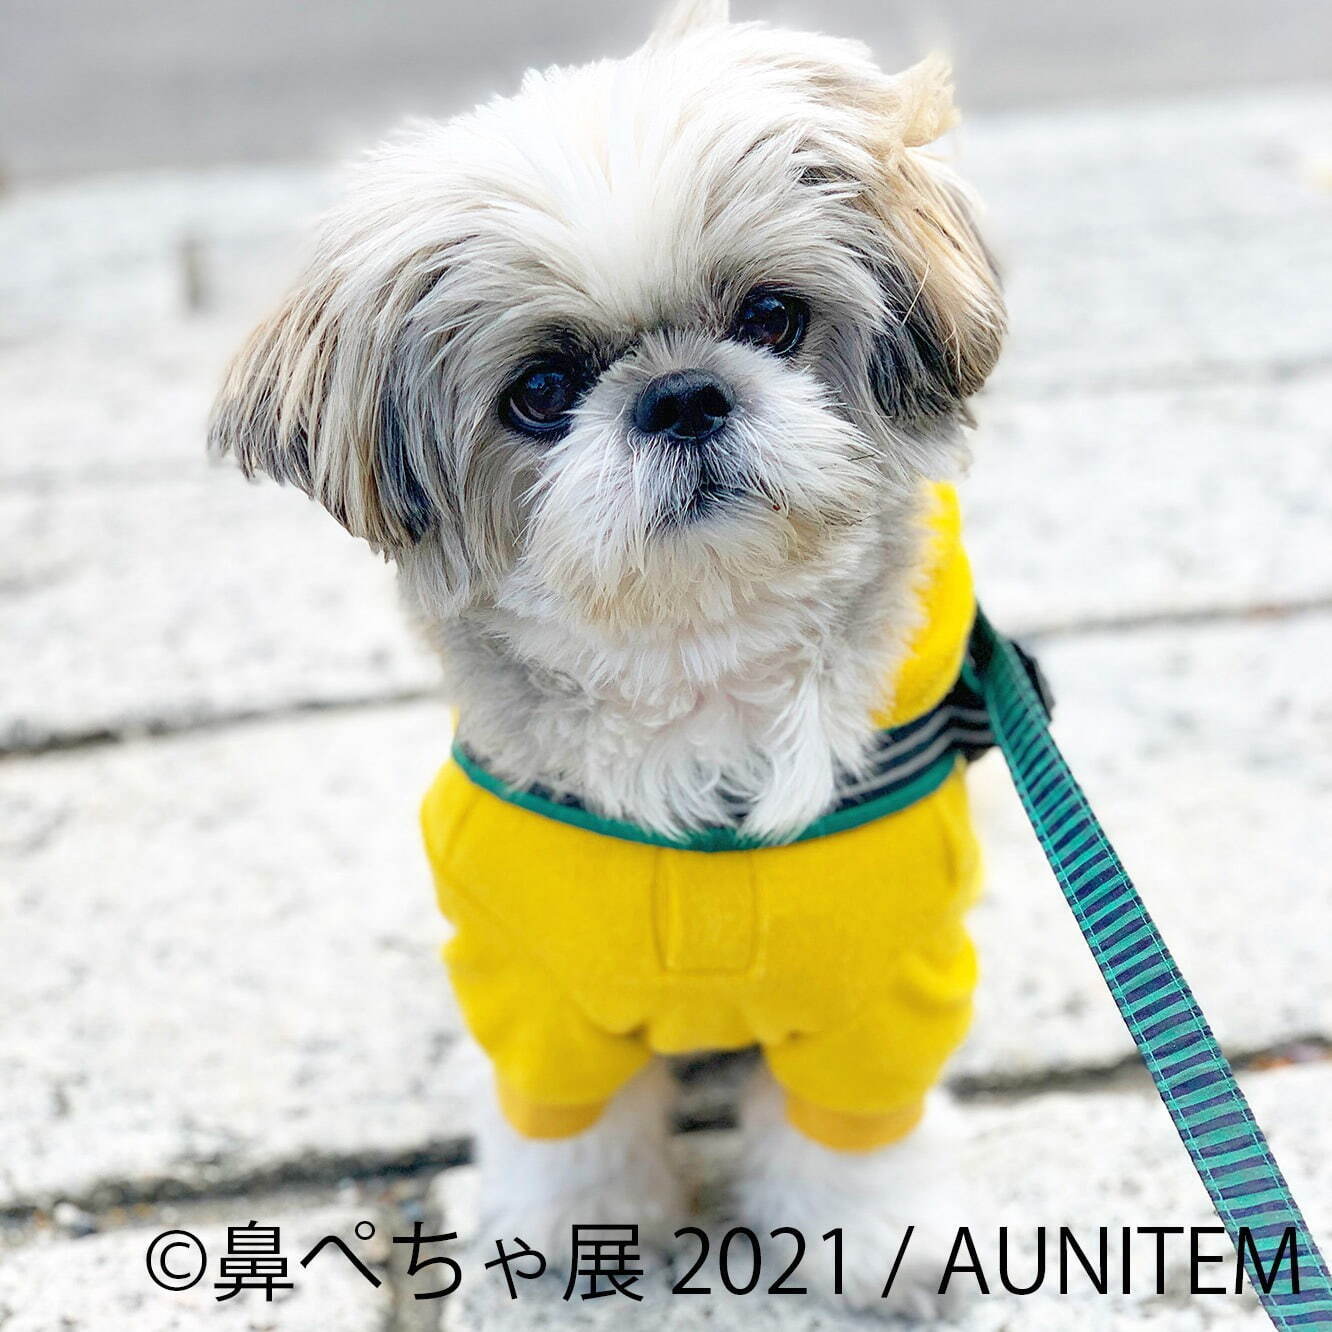 鼻ぺちゃ犬 の合同写真展 物販展が調布パルコで ぶひ可愛い 犬作品やグッズ集結 ファッションプレス